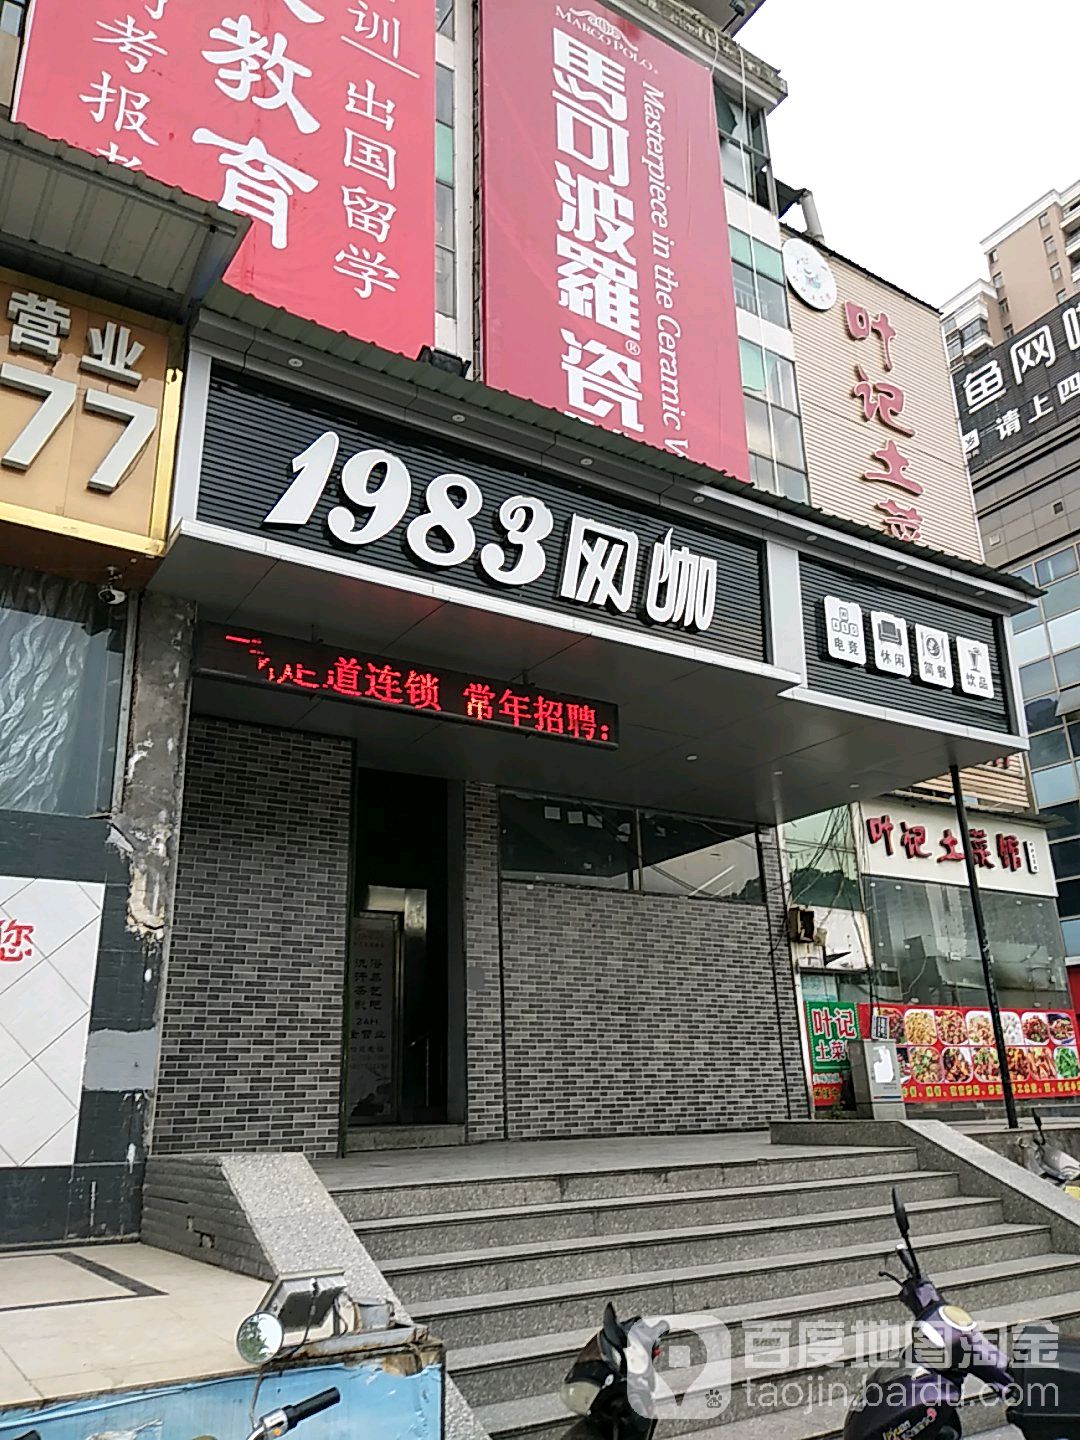 1983网咖(广丰店)